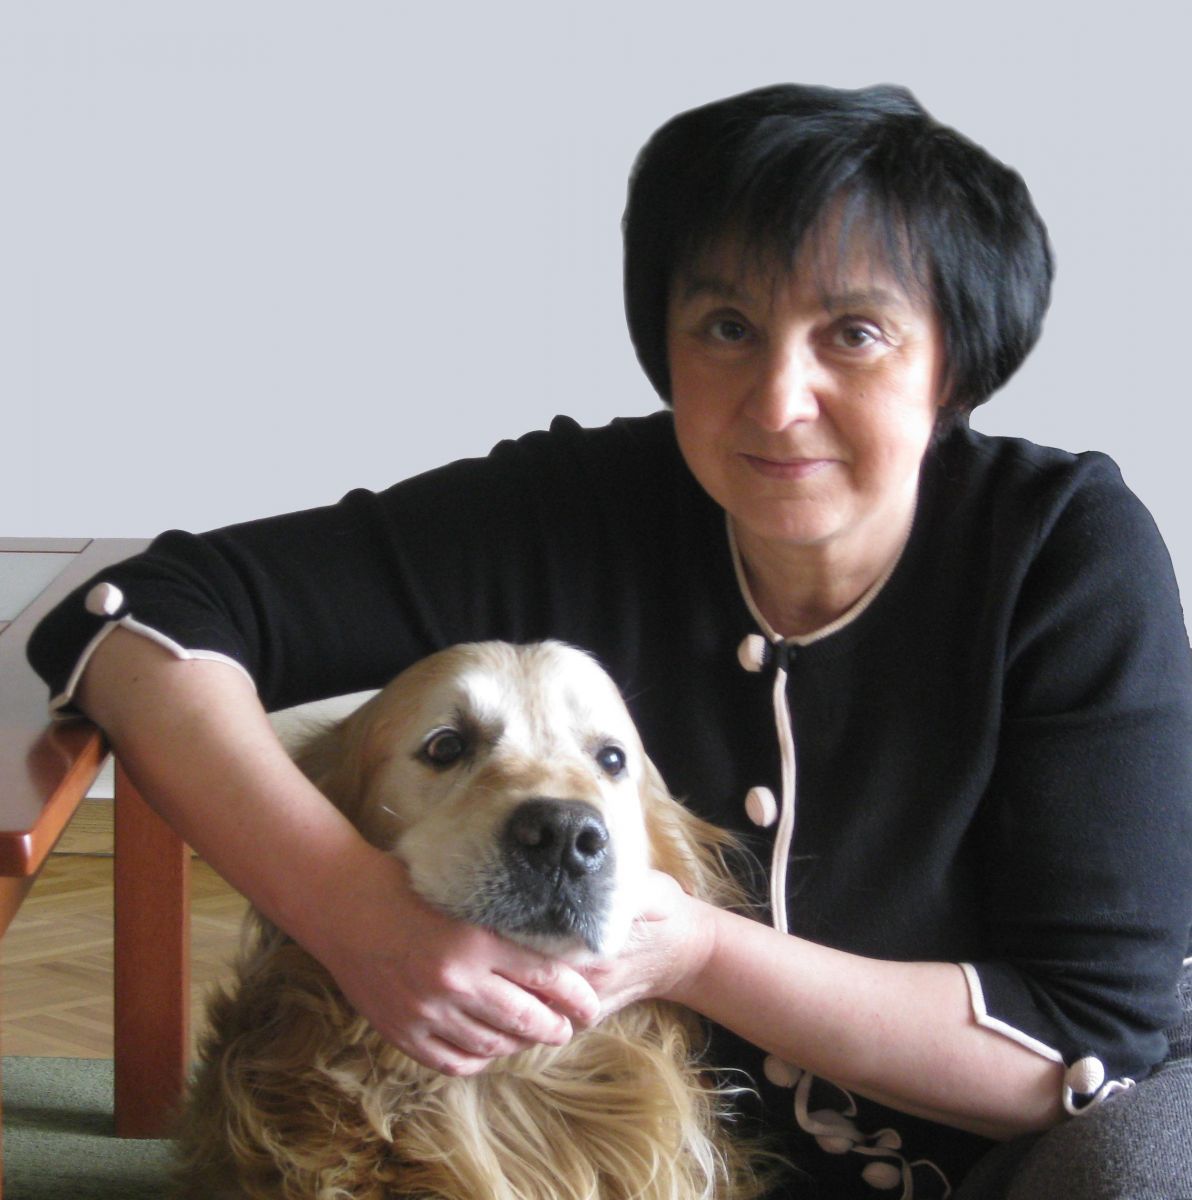 Fotografia portretowa Renata Piątkowska: uśmiechnieta kobieta w krótko ściętych włosach, trzyma obok siebie psa.